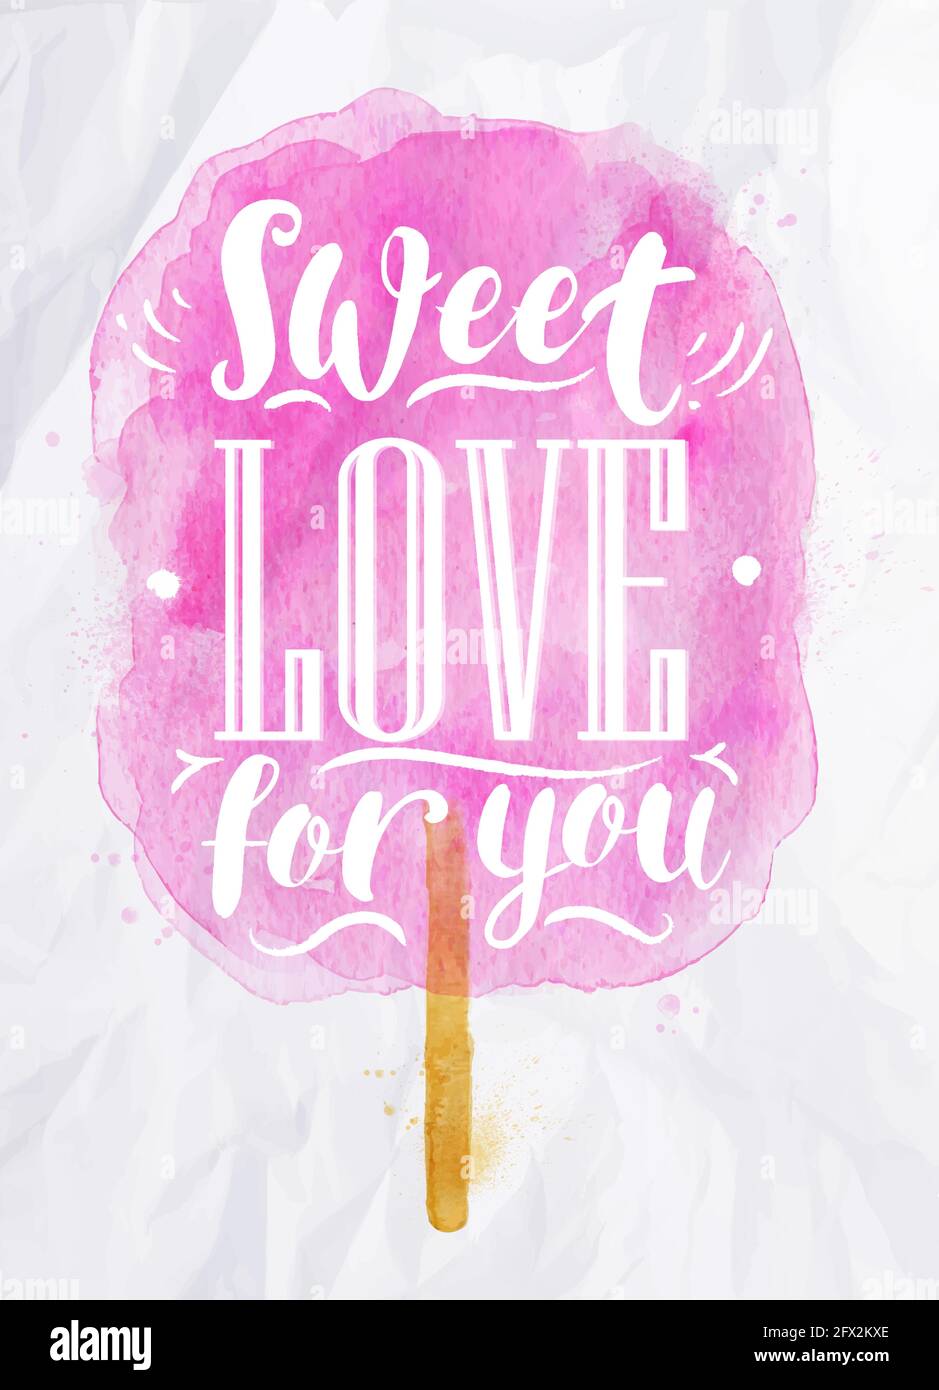 Affiche aquarelle coton bonbon lettrage amour doux pour vous dessin de couleur rose sur du papier froissé Illustration de Vecteur